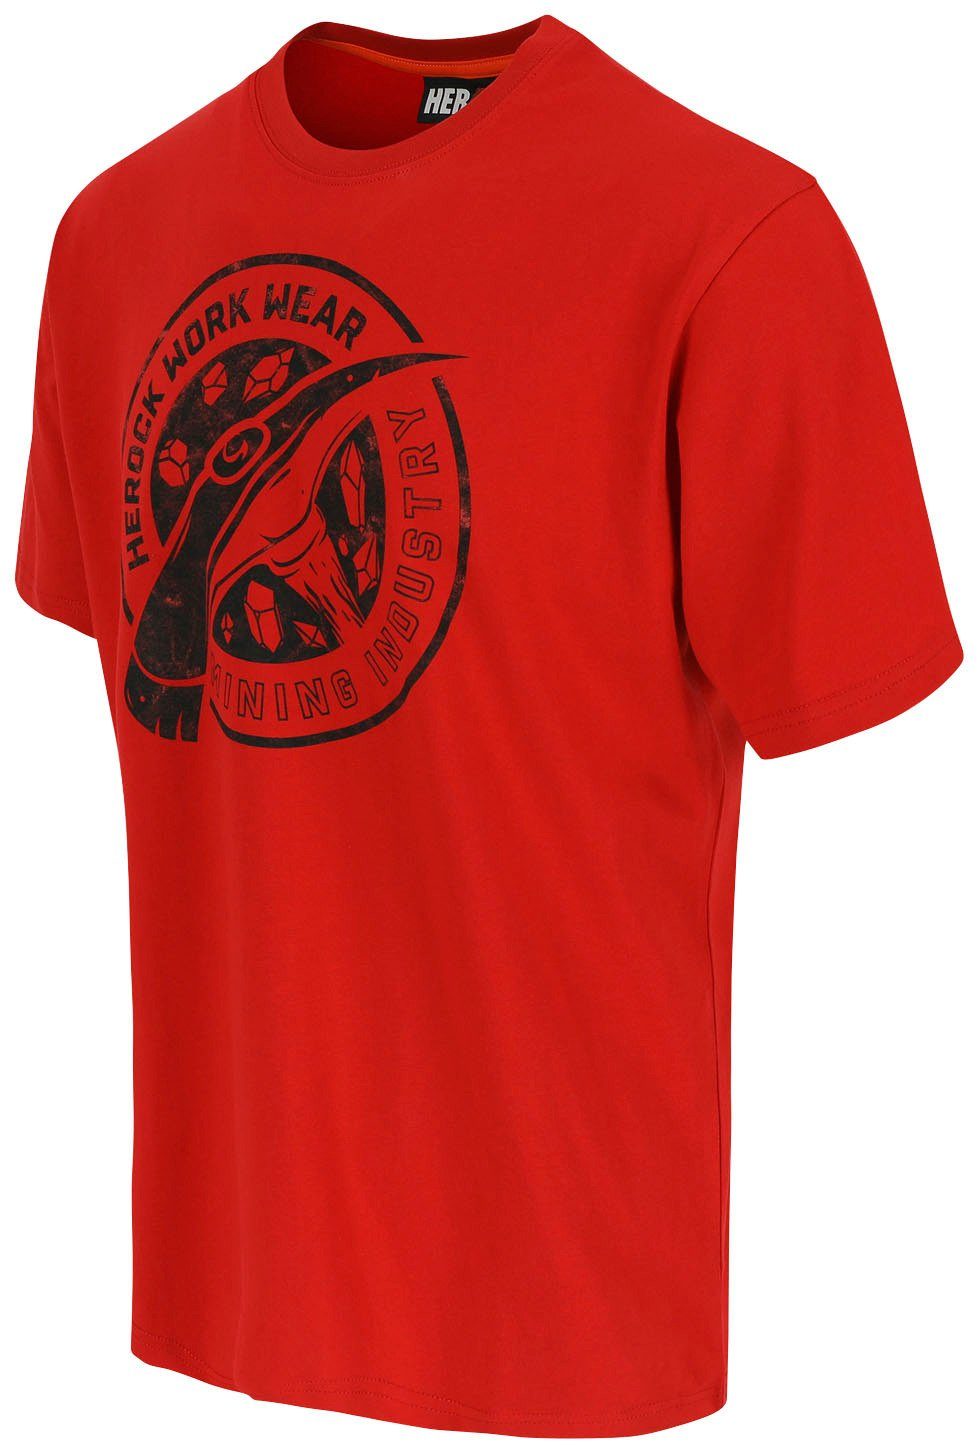 Herock T-Shirt Worker verschiedene Limited in Farben erhältlich rot Edition